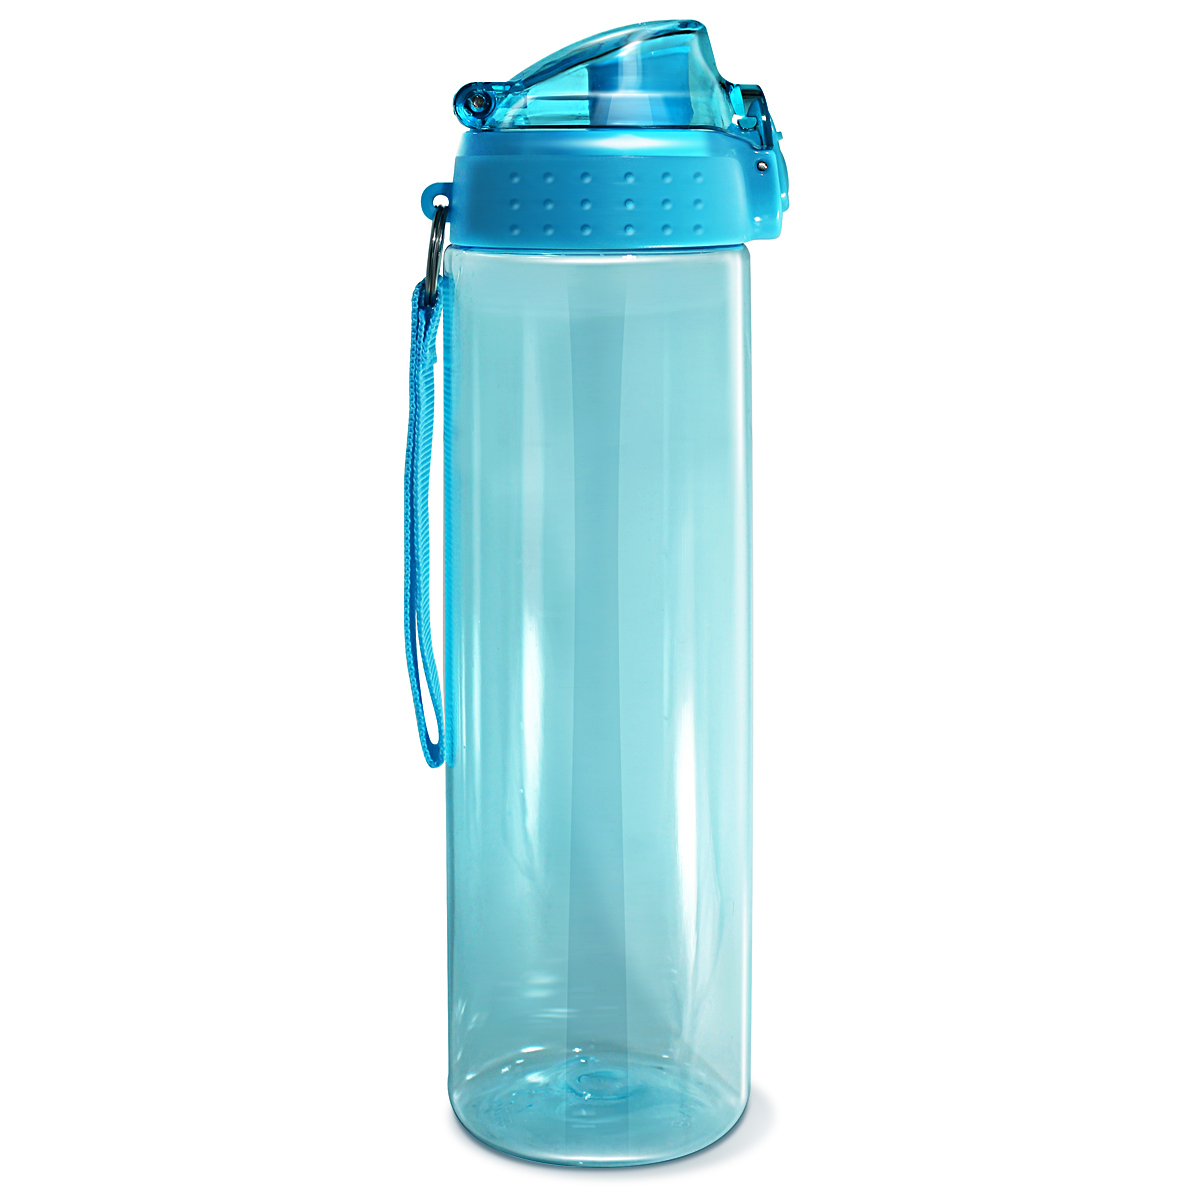 Легкая бутылка для воды. Спортивная бутылка sn2035 be first. Be first бутылка (sn2035) 700 мл, синий. Be first бутылка для воды Тритан. Бутылка для воды be first Тритан 900 мл, черная (sn2036-Black-nl).